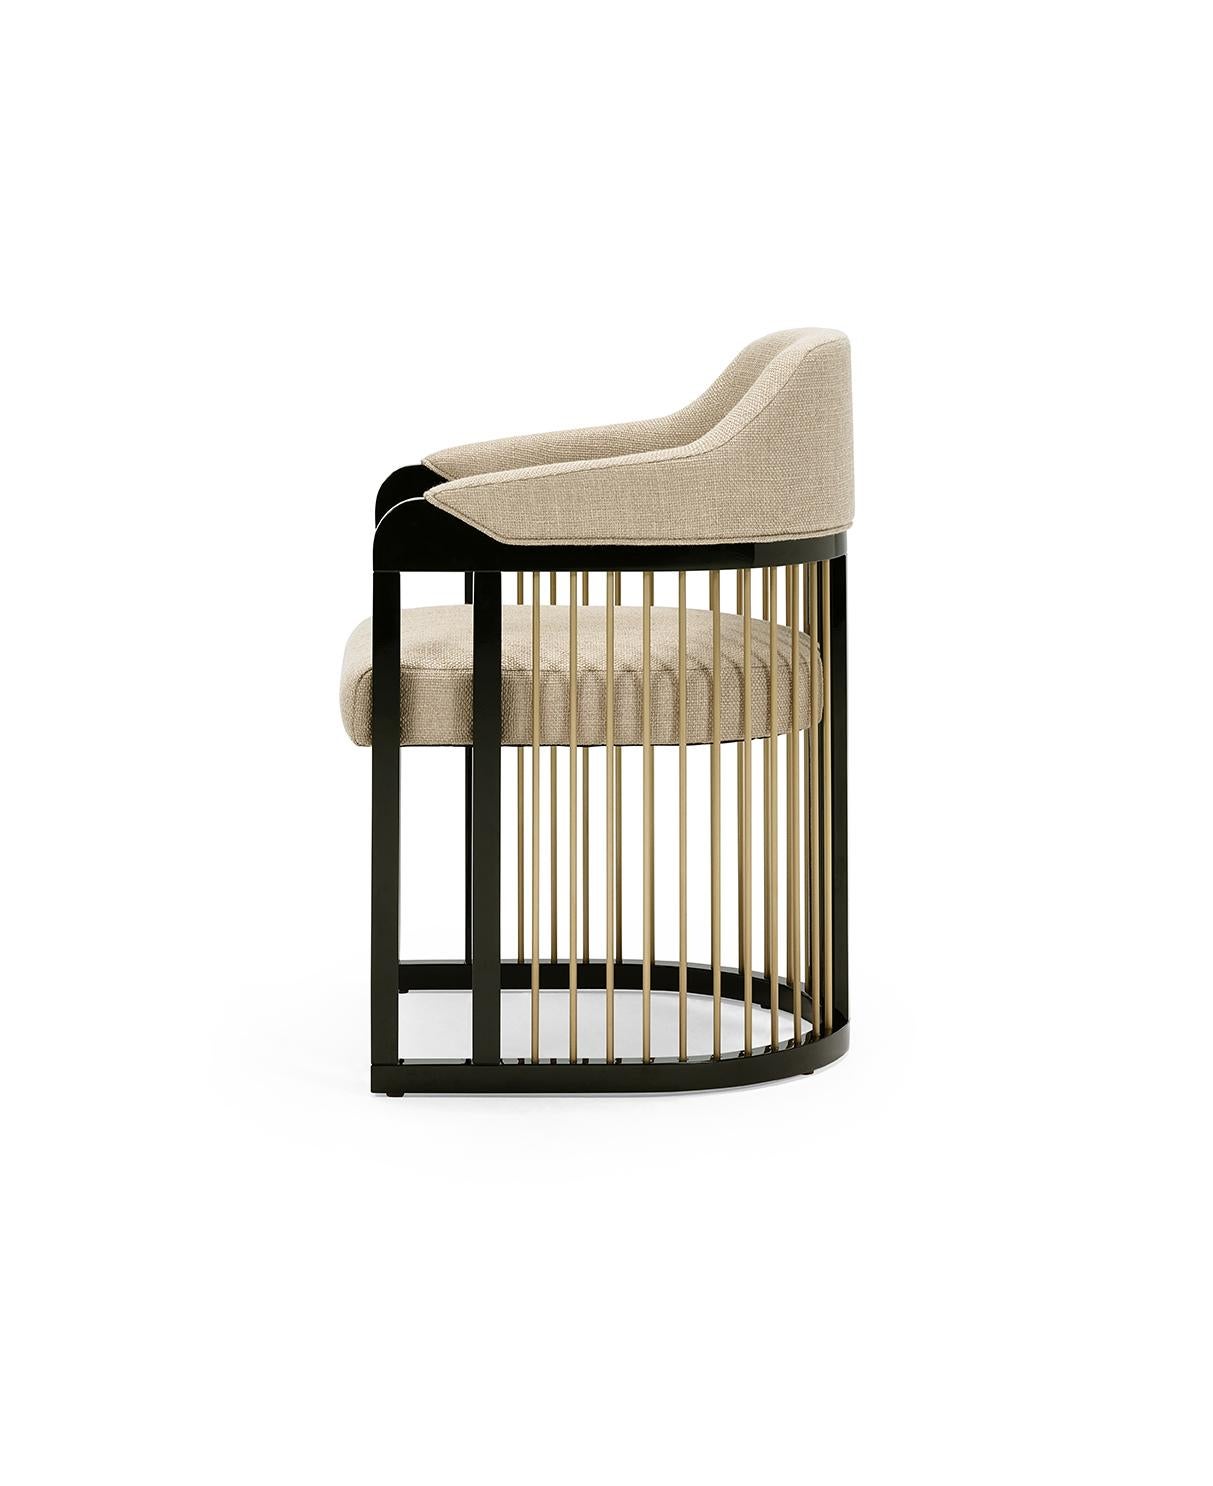 Der raffinierte Charakter des Stuhls GRACE Urban entsteht durch die Kombination der unterschiedlichsten Materialien, vom Holz bis hin zu den Stoffstrukturen und den metallischen Details, die auf eine ganz besondere und elegante Weise Gestalt